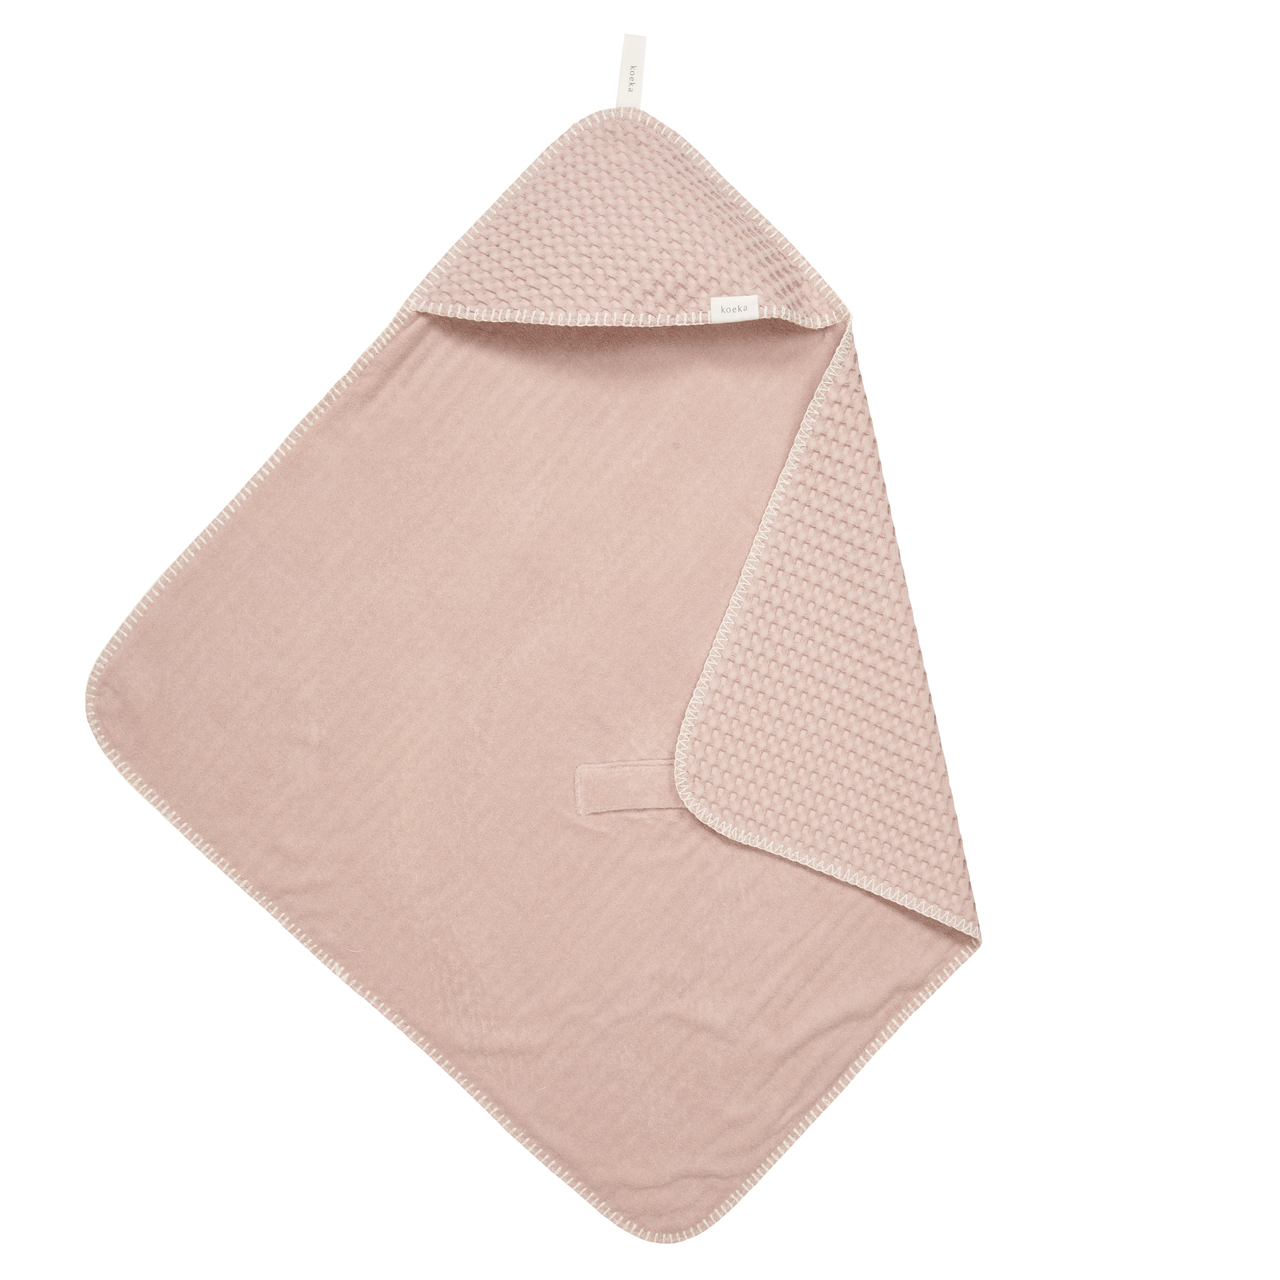 Wrap towel Antwerp grey pink